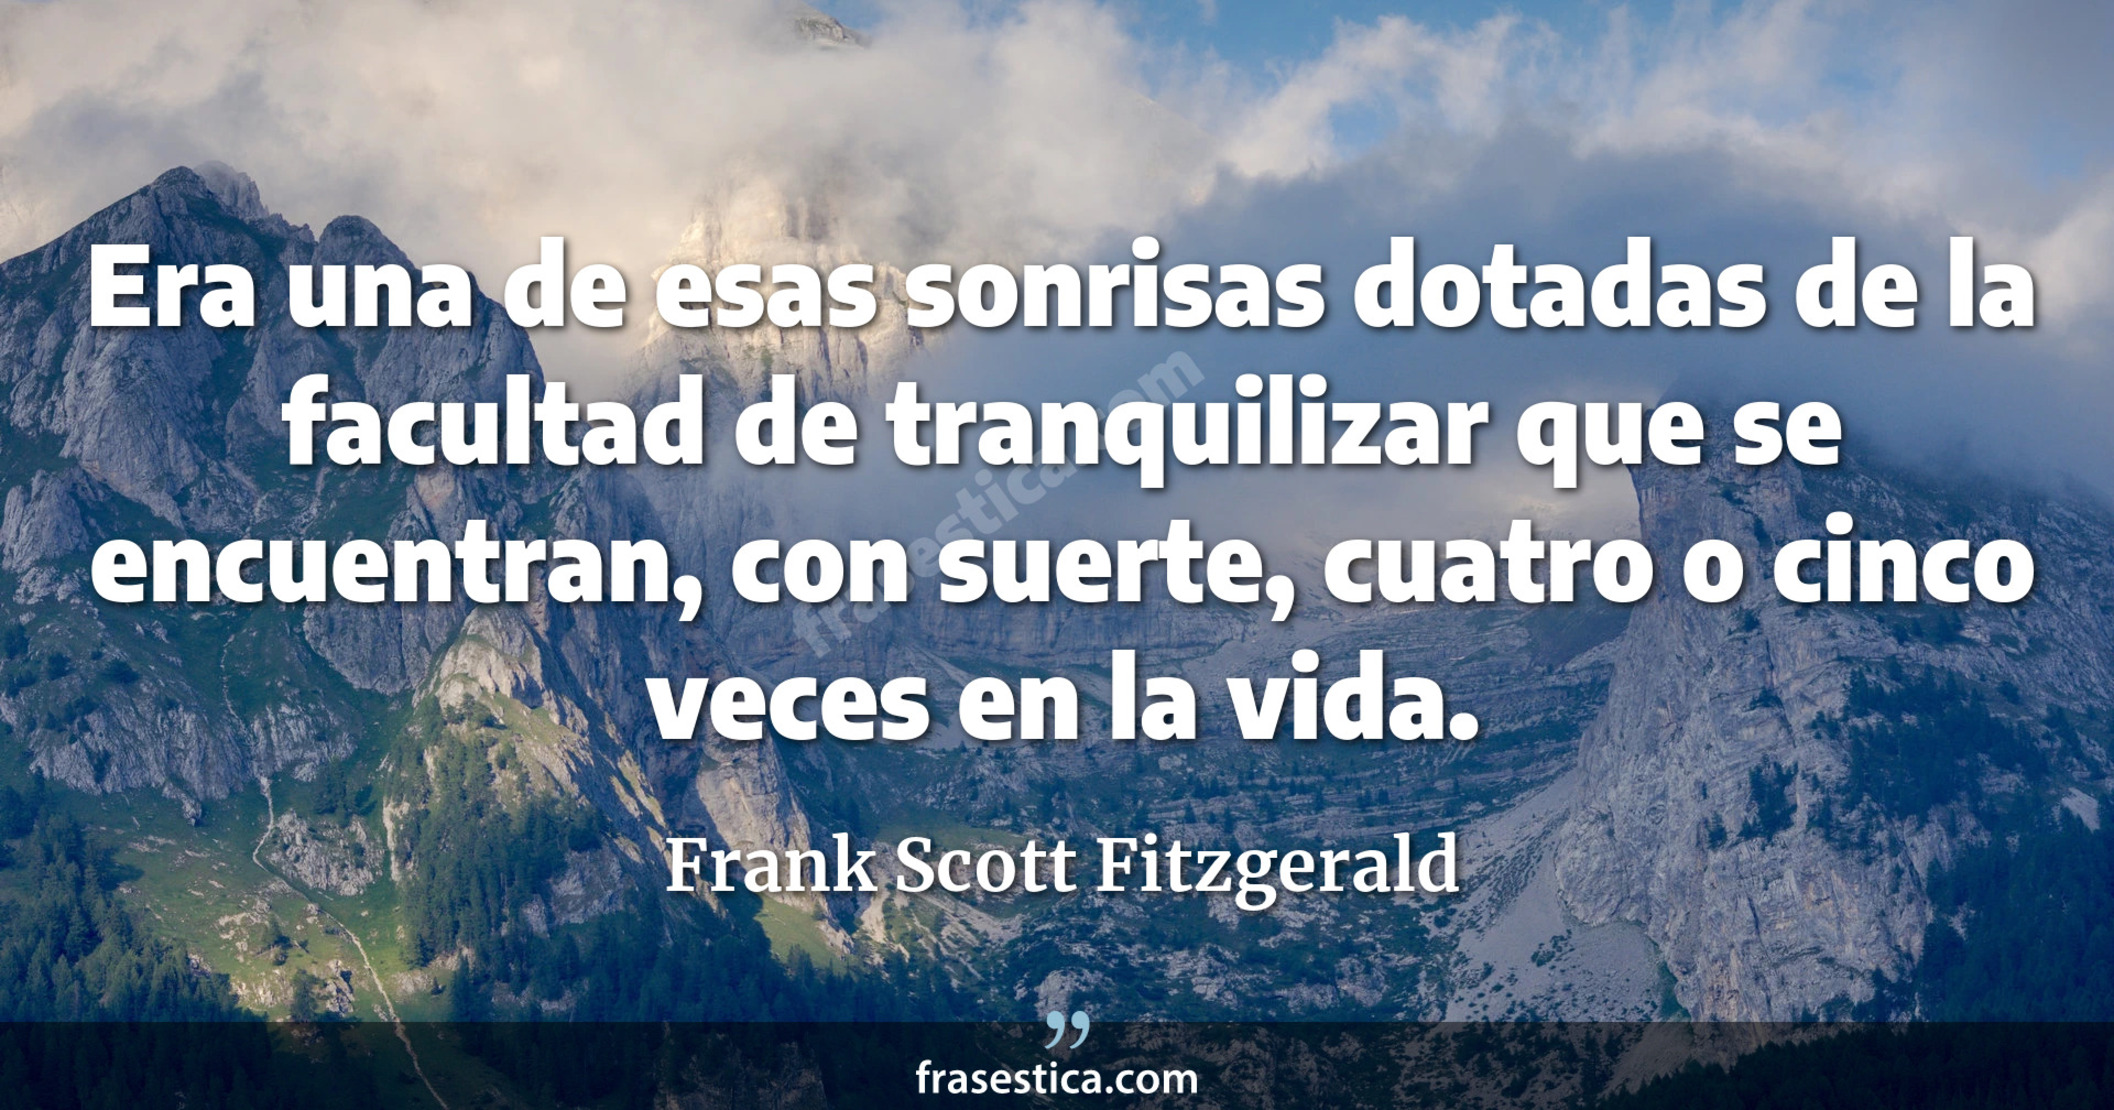 Era una de esas sonrisas dotadas de la facultad de tranquilizar que se encuentran, con suerte, cuatro o cinco veces en la vida. - Frank Scott Fitzgerald